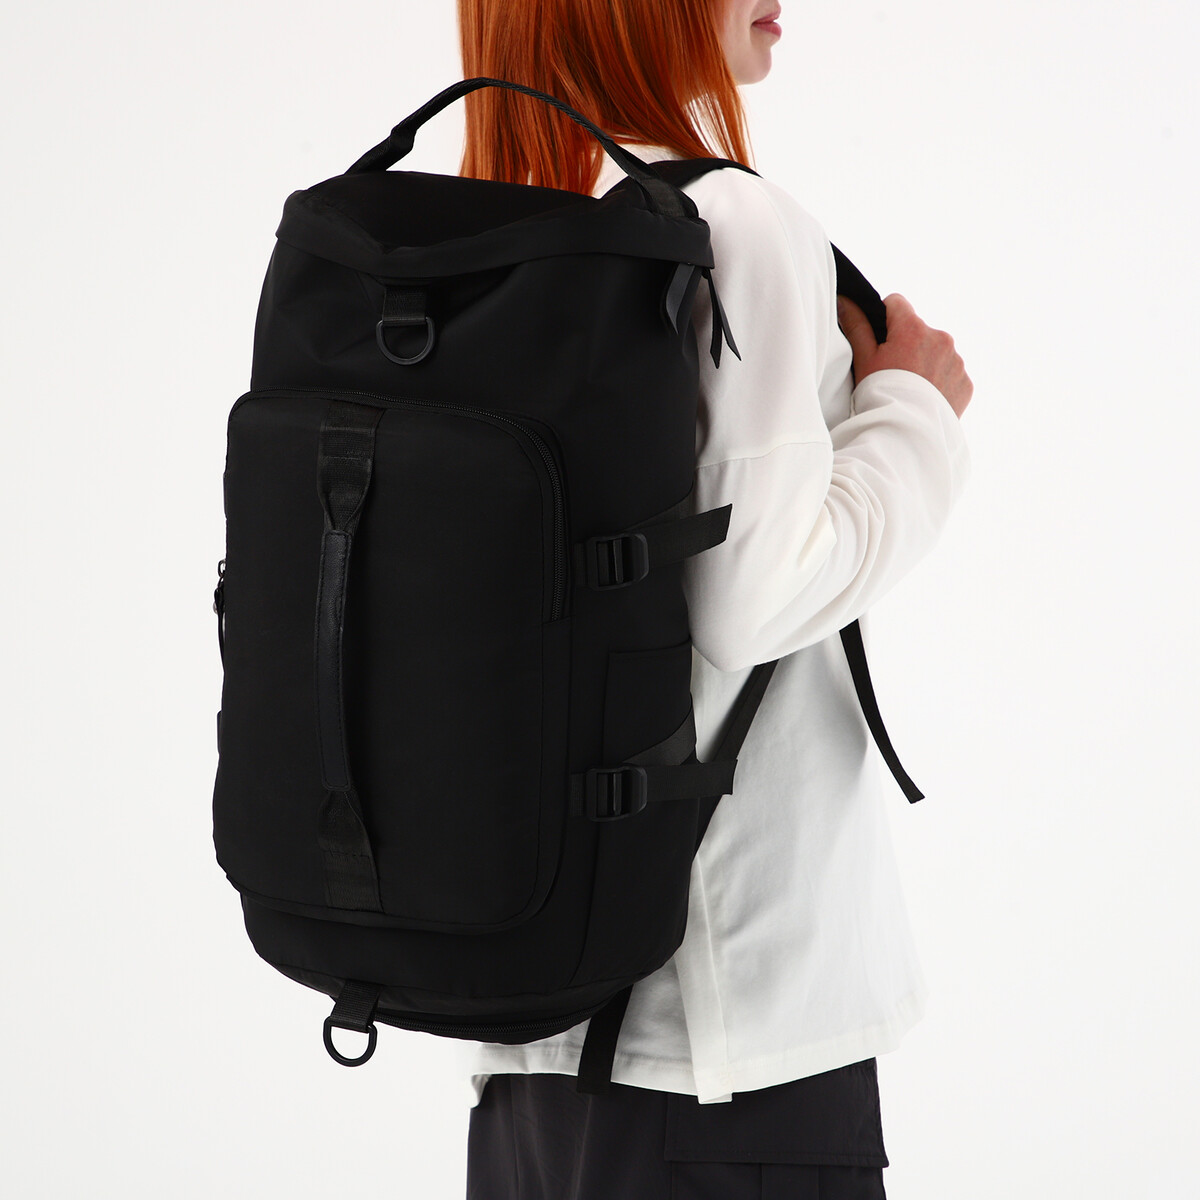 Рюкзак-сумка на молнии, 4 наружных кармана, отделение для обуви, цвет черный